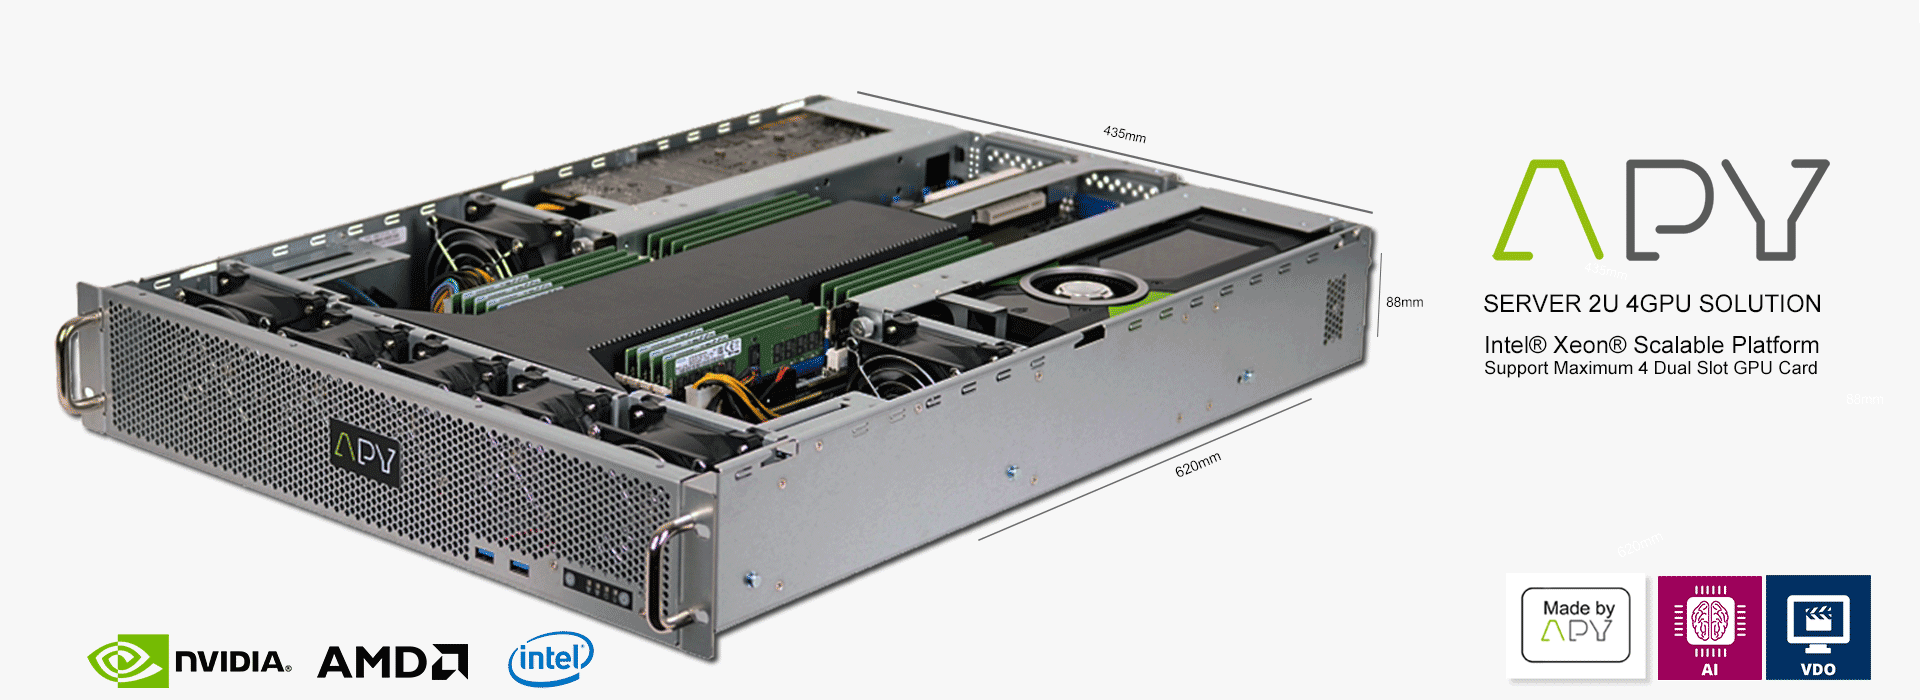 Discover the APY ONE G4 2U 4 GPU server made in APY